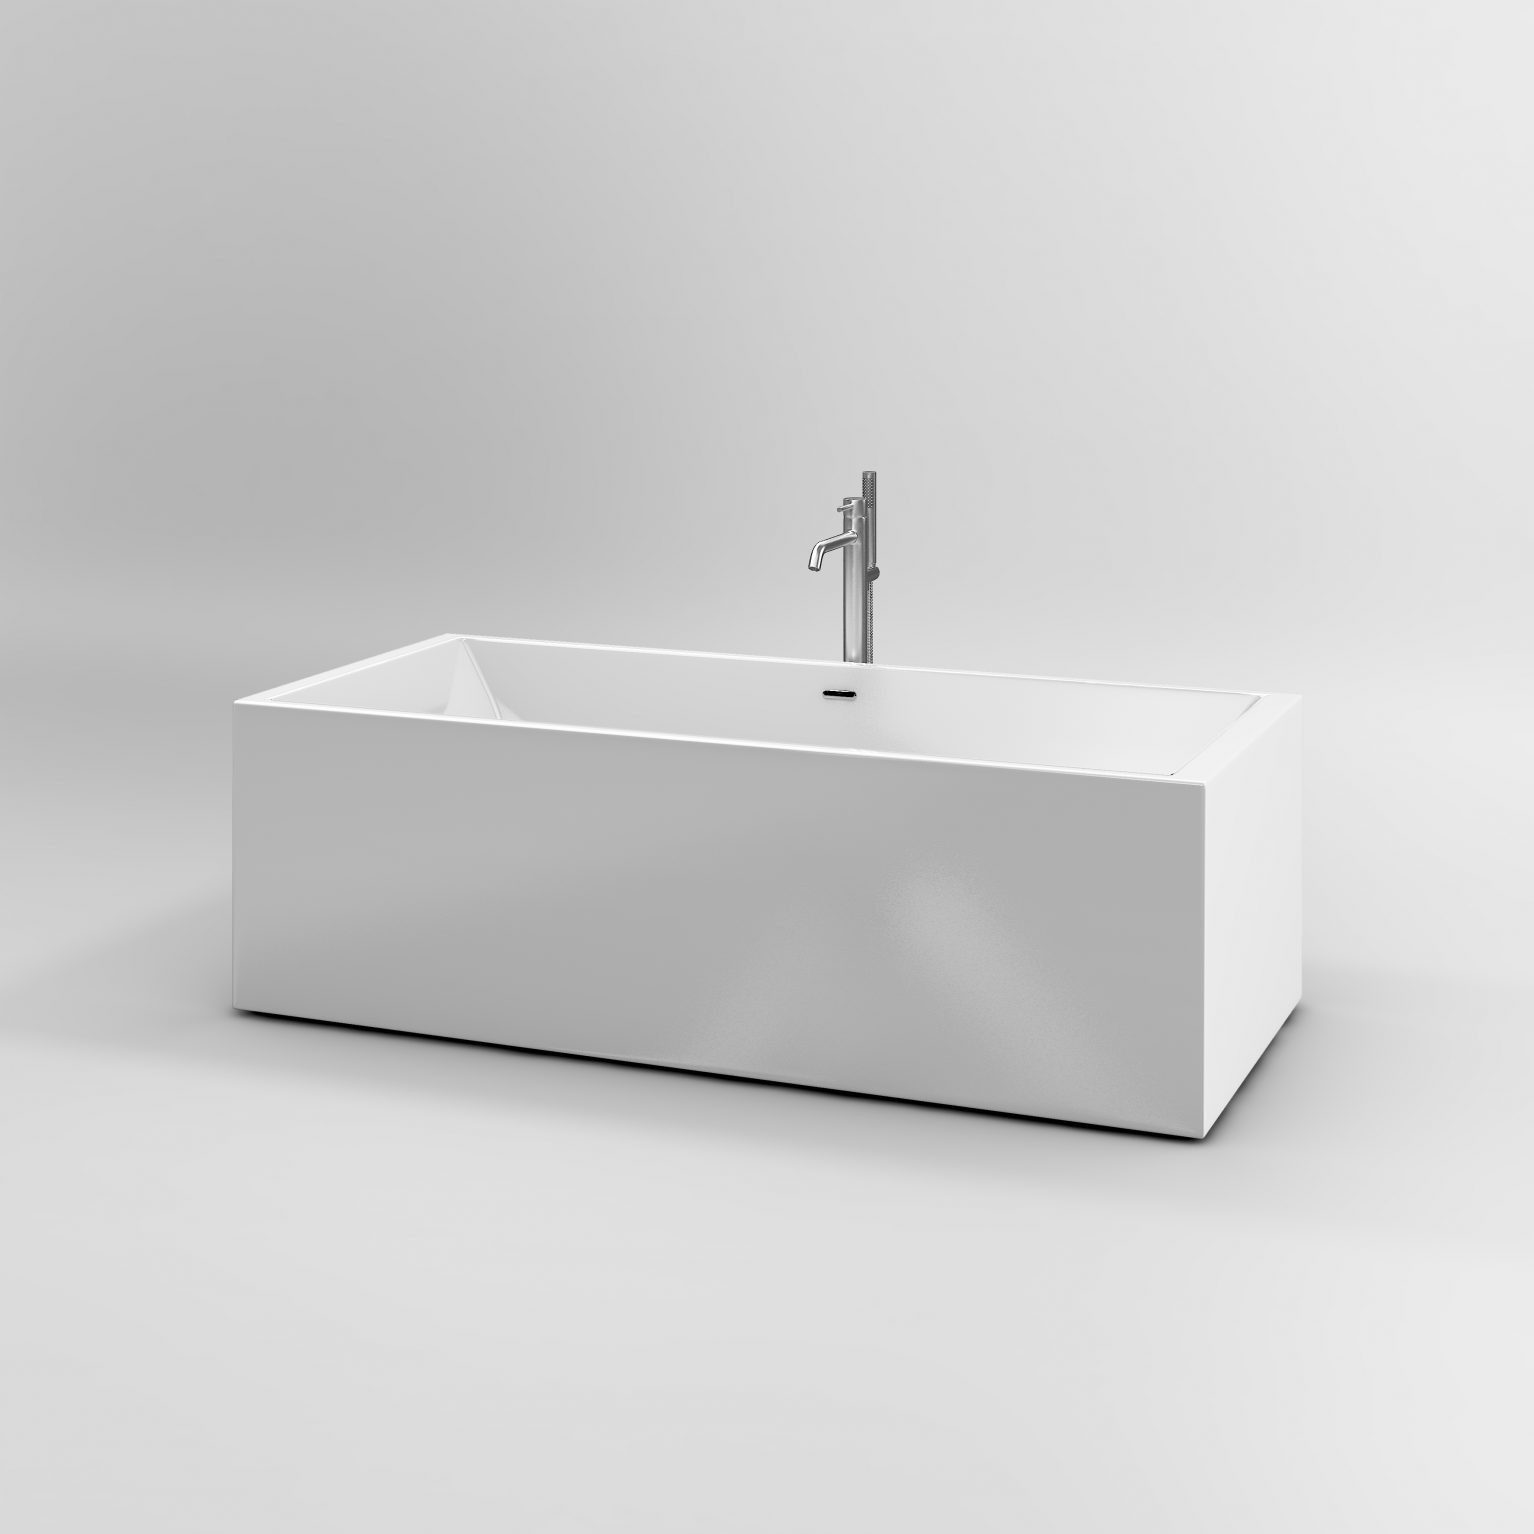 vrijstaande-bad-meng-kraan-handdouche-rvs-toilet-badkamer-luxe-sanitair-Xo-type13-clou-CL060401341-bad-kraan-mat-geborsteld